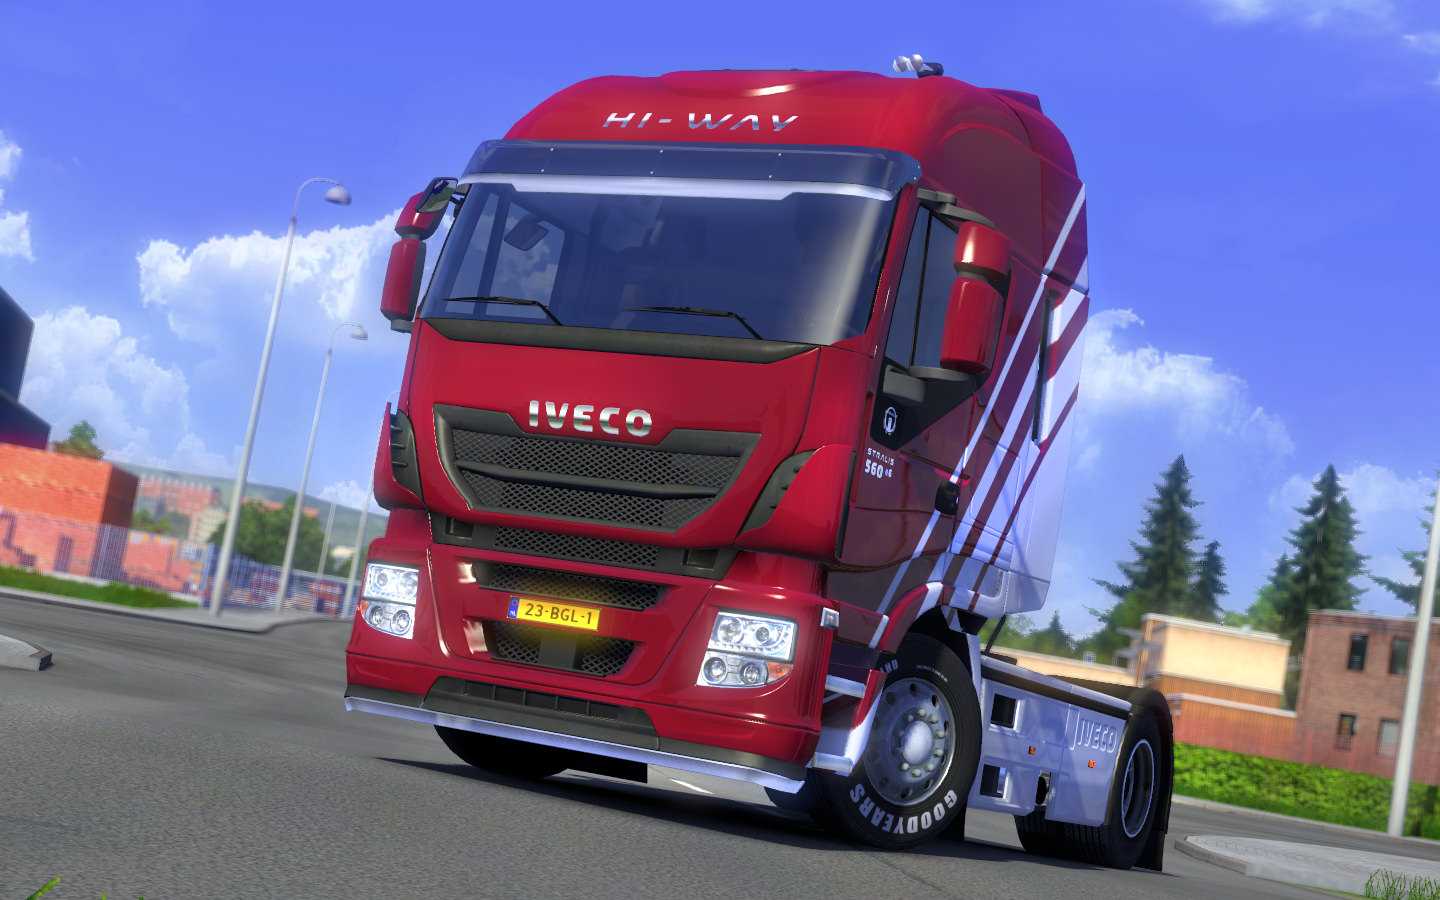 Euro truck simulator 2 — стоит ли покупать и играть? | плюсы и минусы